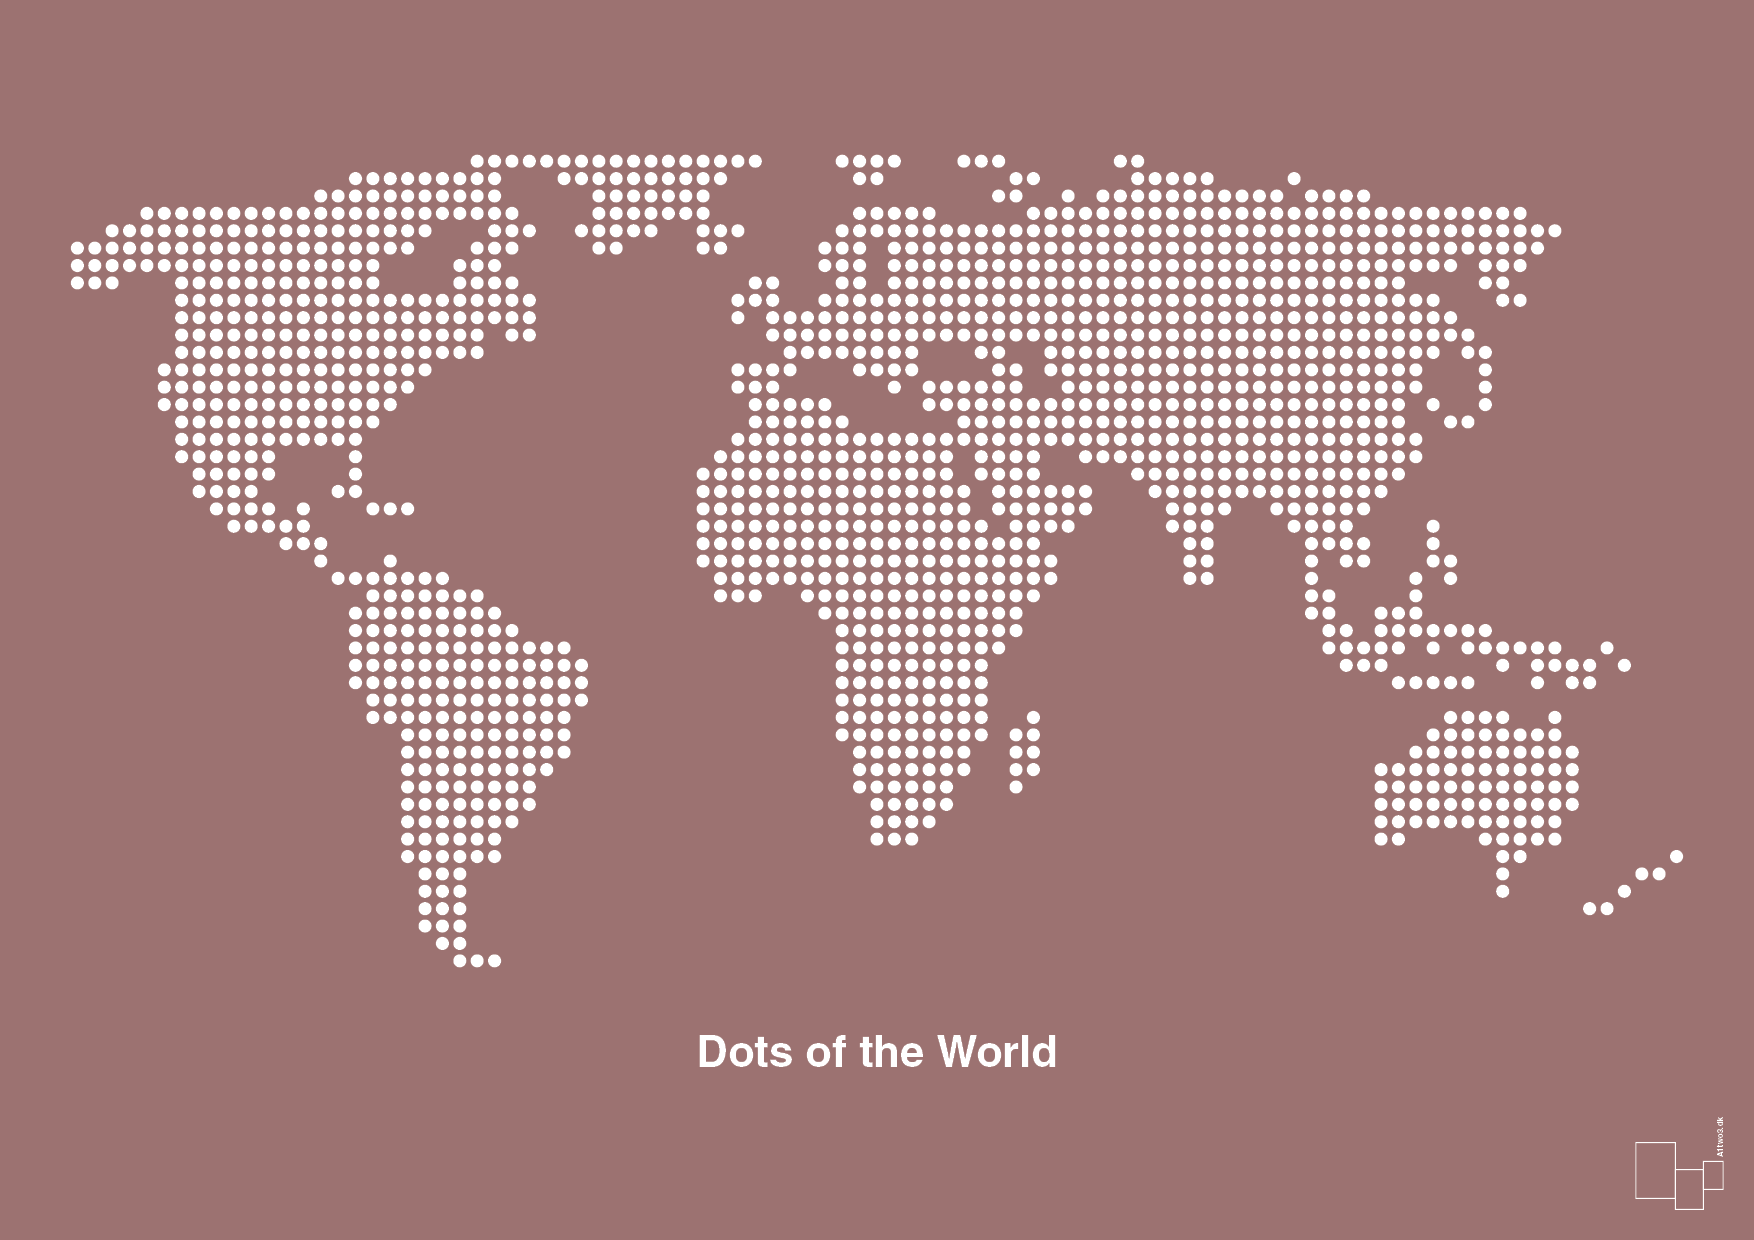 verdenskort - Plakat med Grafik i Plum